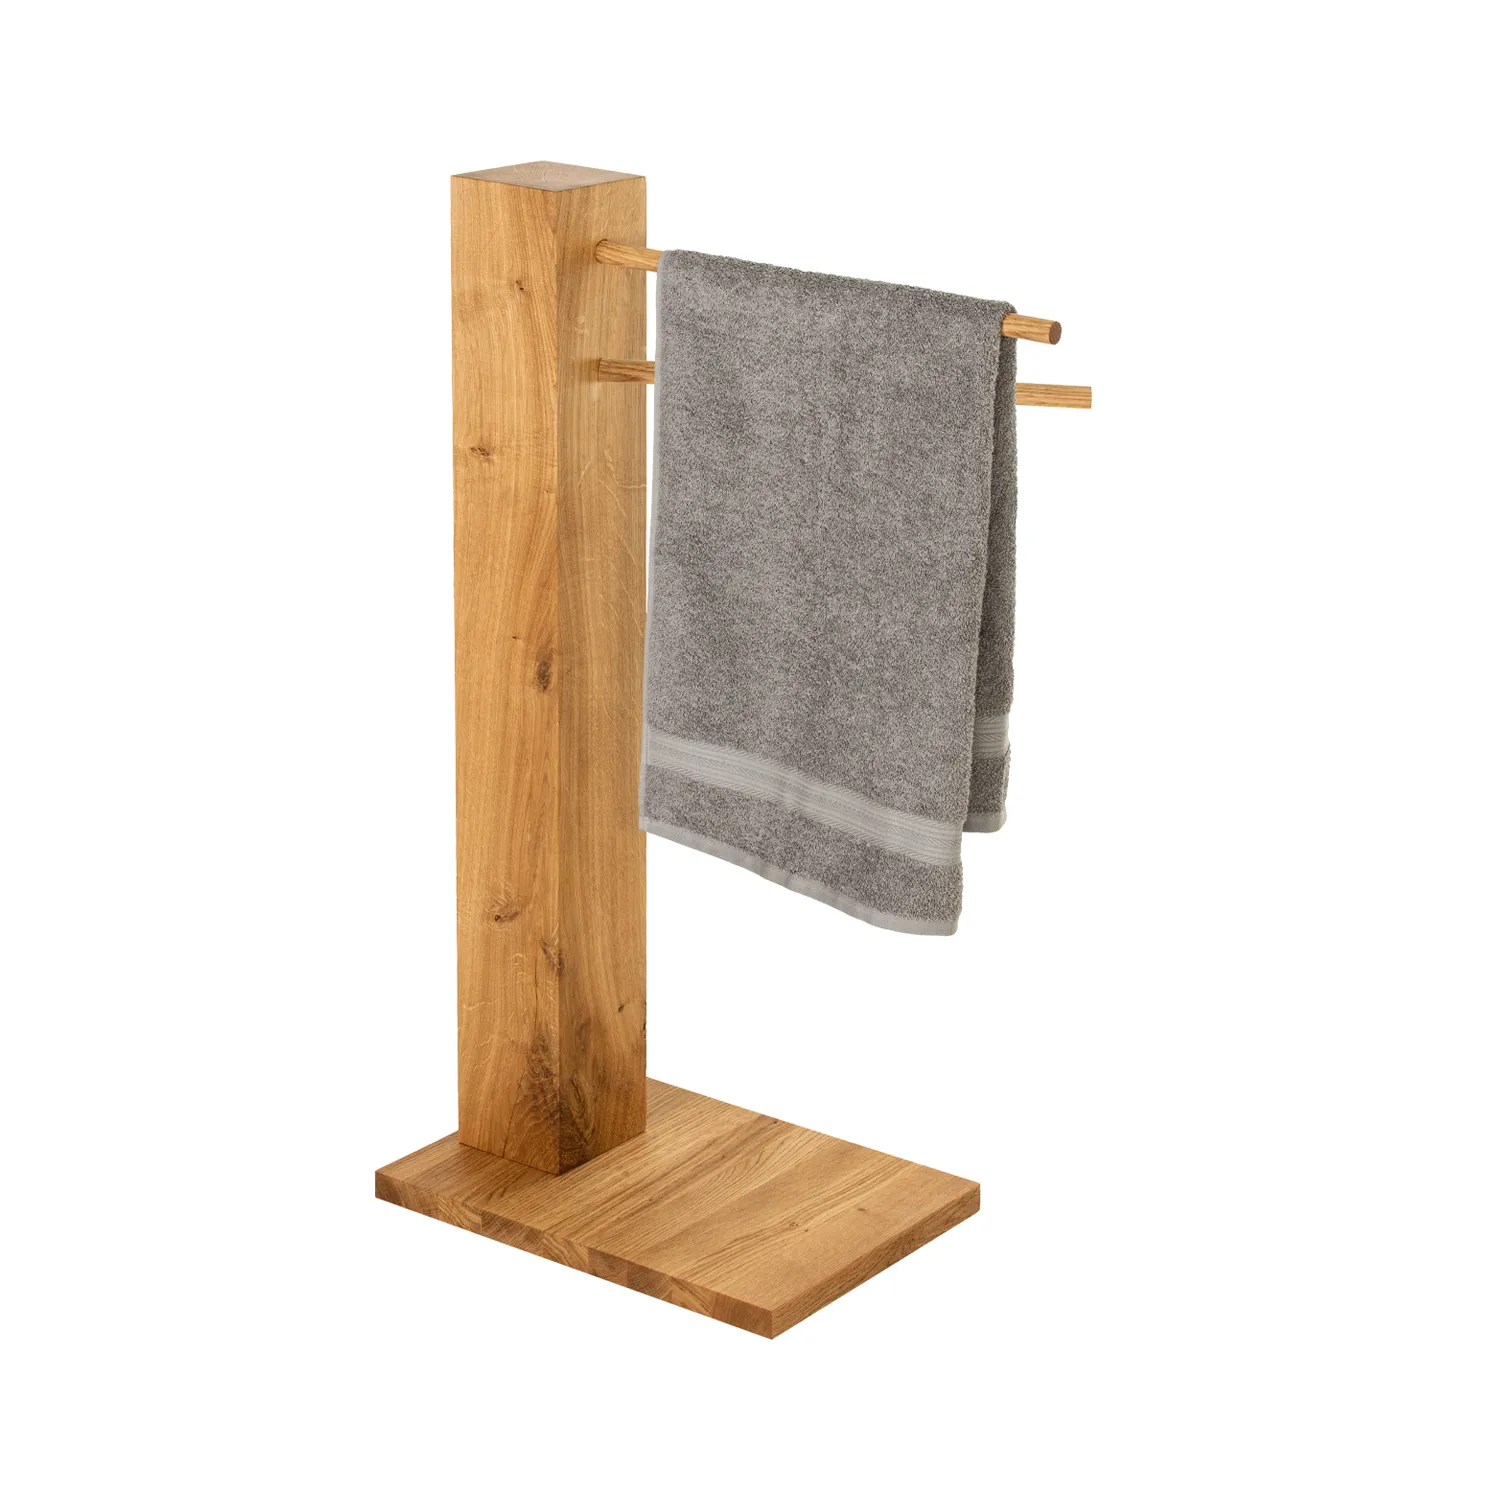 Handtuchhalter aus Massivholz mit zwei Rundstäben für Handtücher